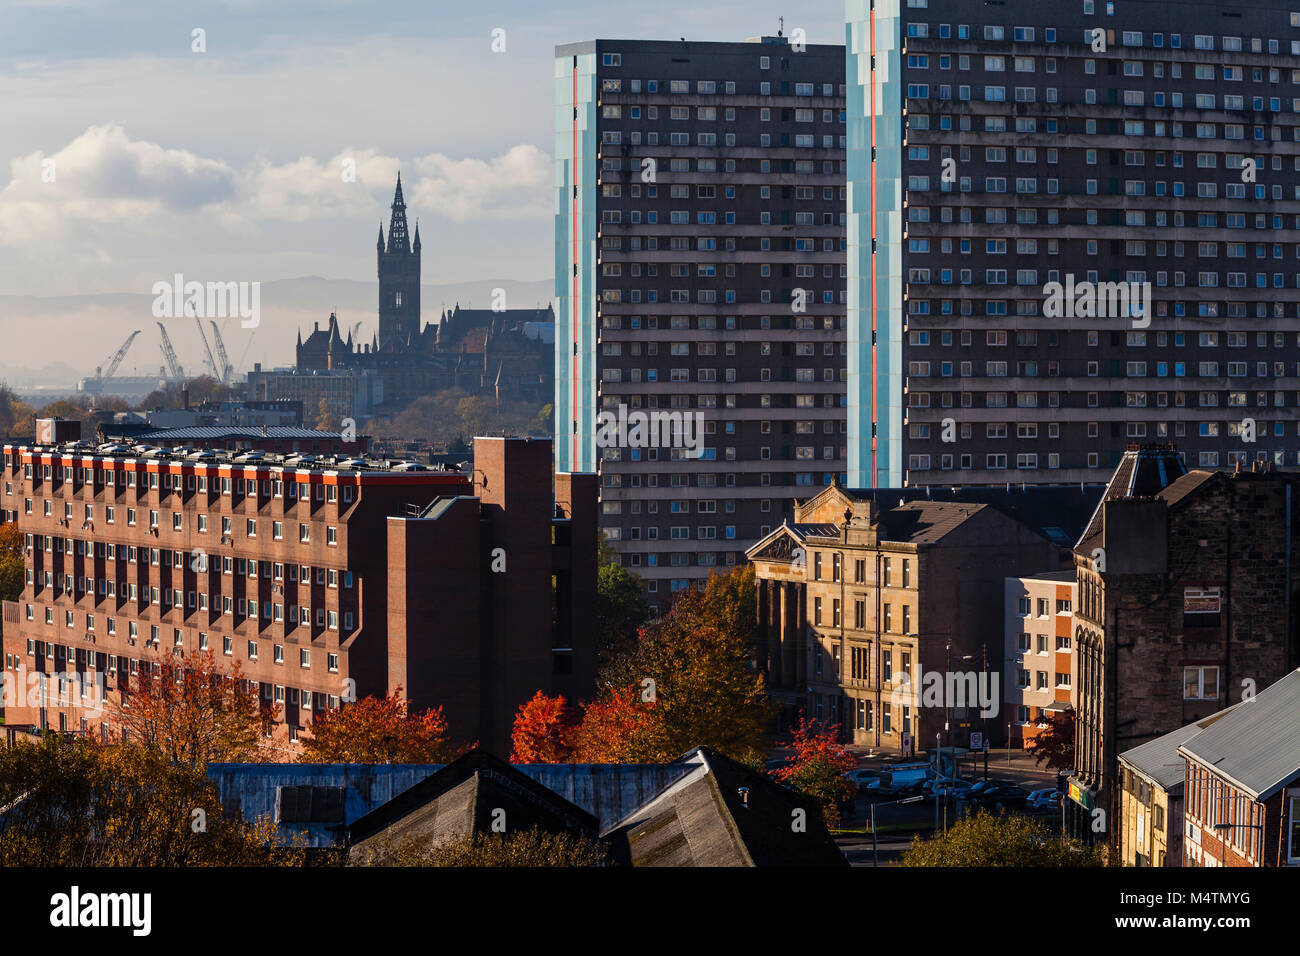 Vista dello skyline di Glasgow che si affaccia sull'alloggiamento sociale verso il campanile dell'Università di Glasgow con gru dei cantieri sullo sfondo, Scozia, Regno Unito Foto Stock